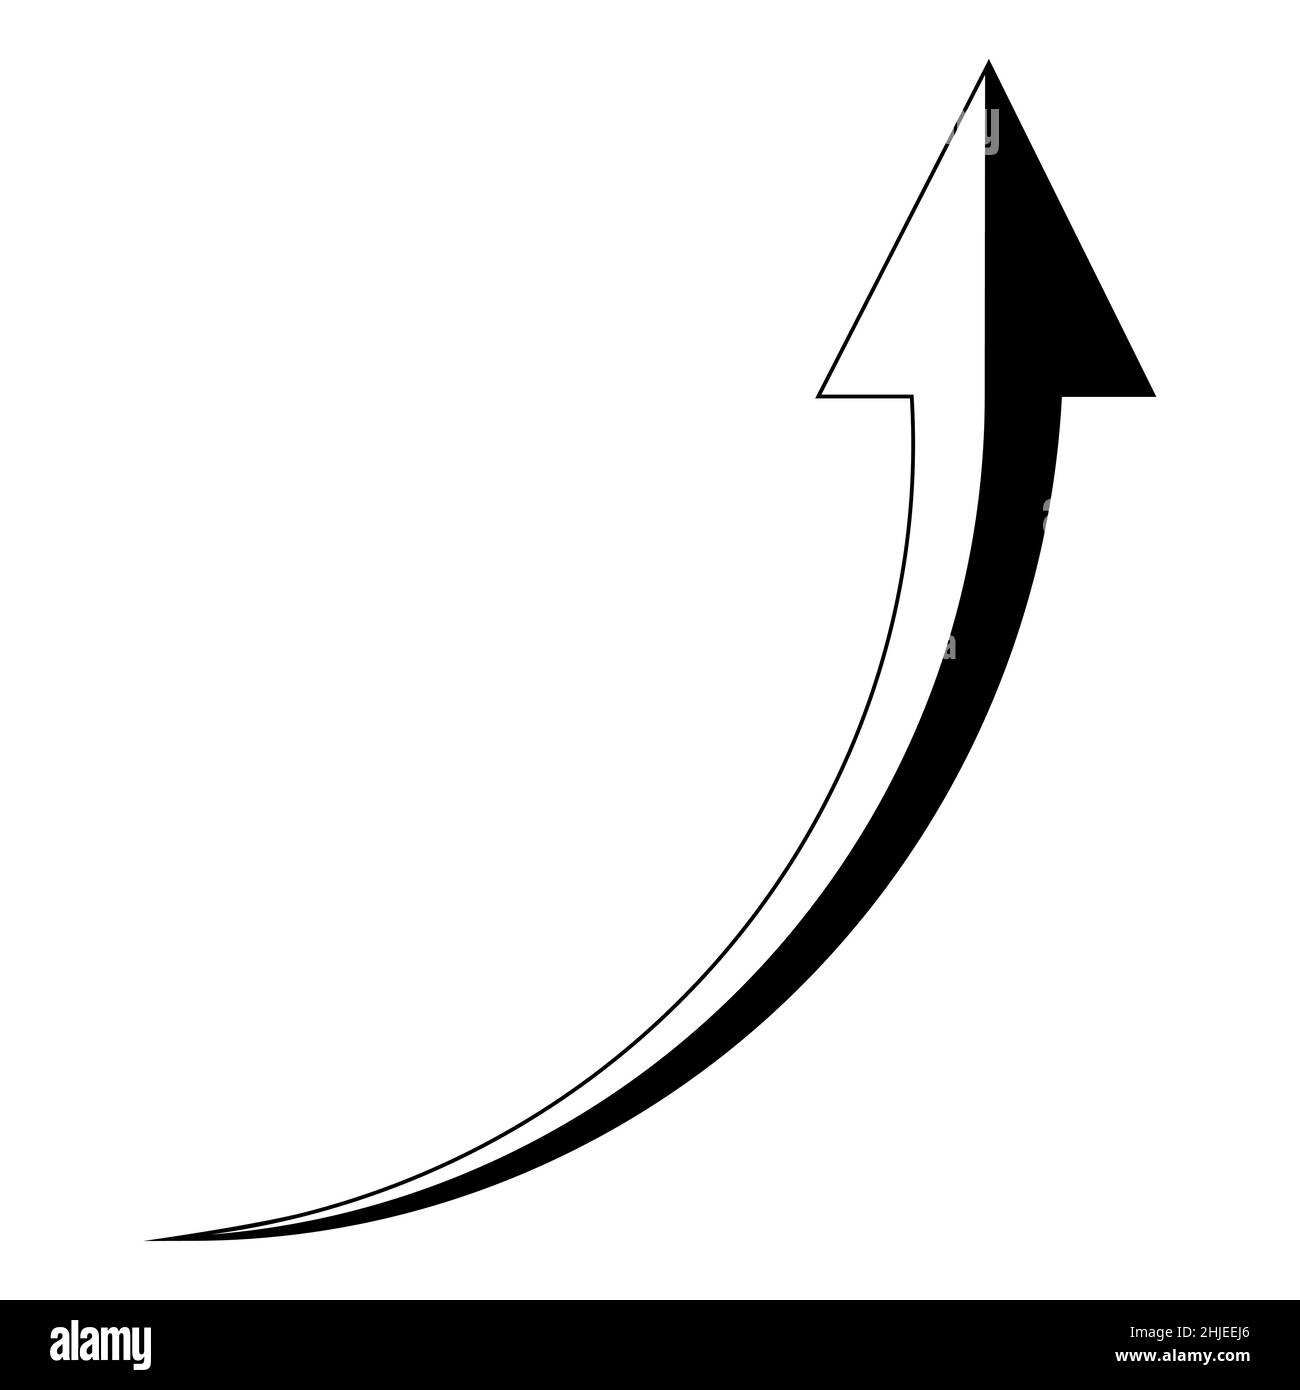 Noir et blanc, flèche montante vers le haut, flèche ascendante de tendance vers le haut Illustration de Vecteur